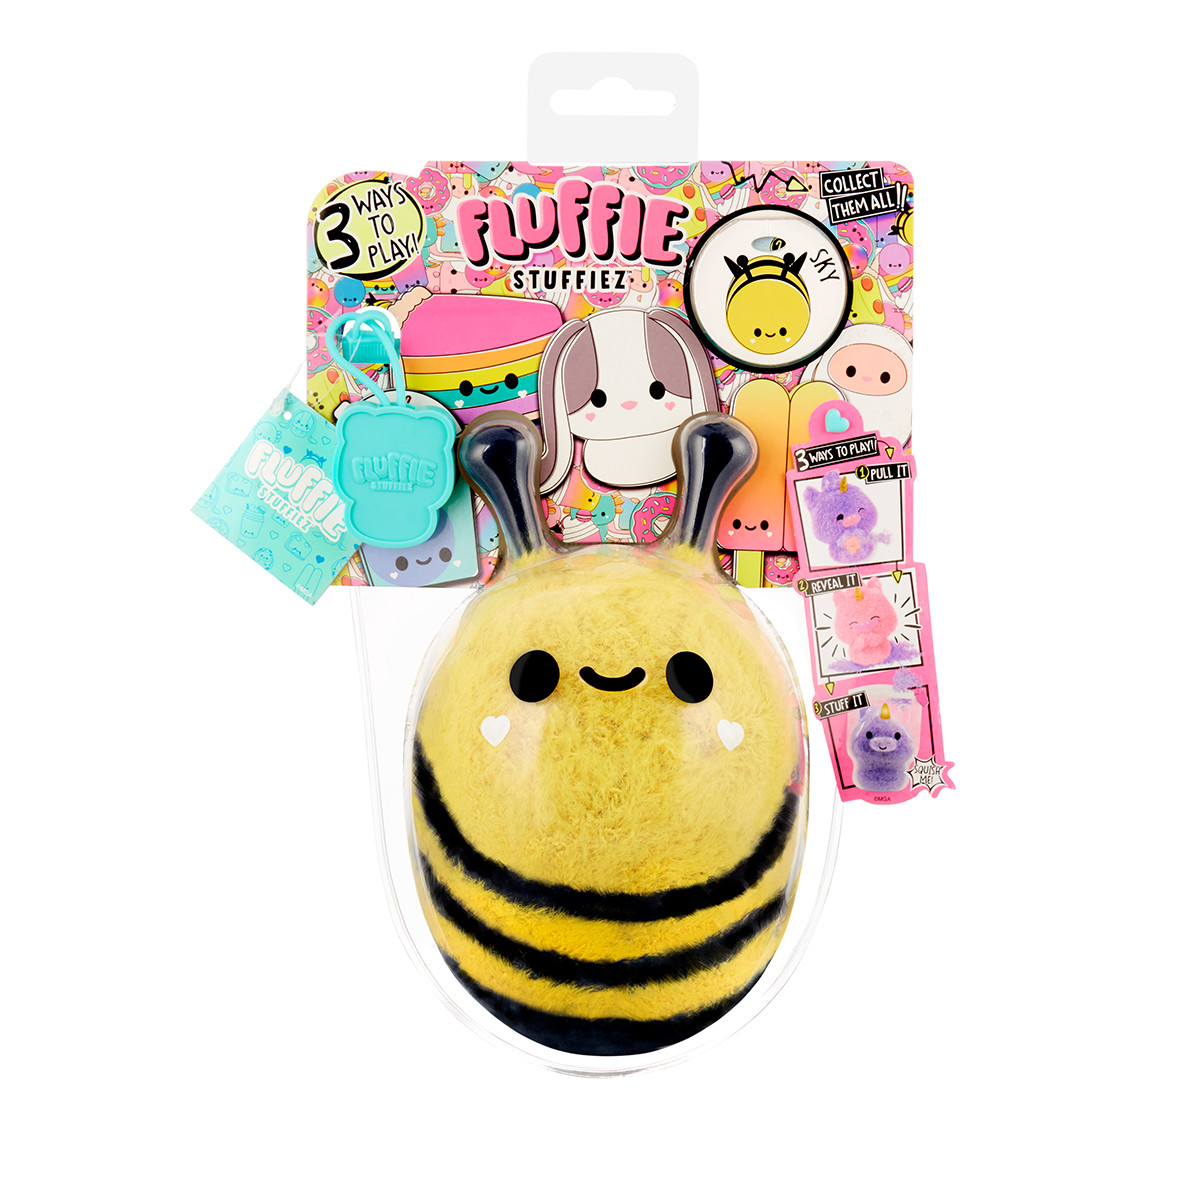 М'яка іграшка-антистрес fluffie stuffiez серії "small plush" — бджілка/божя корівка